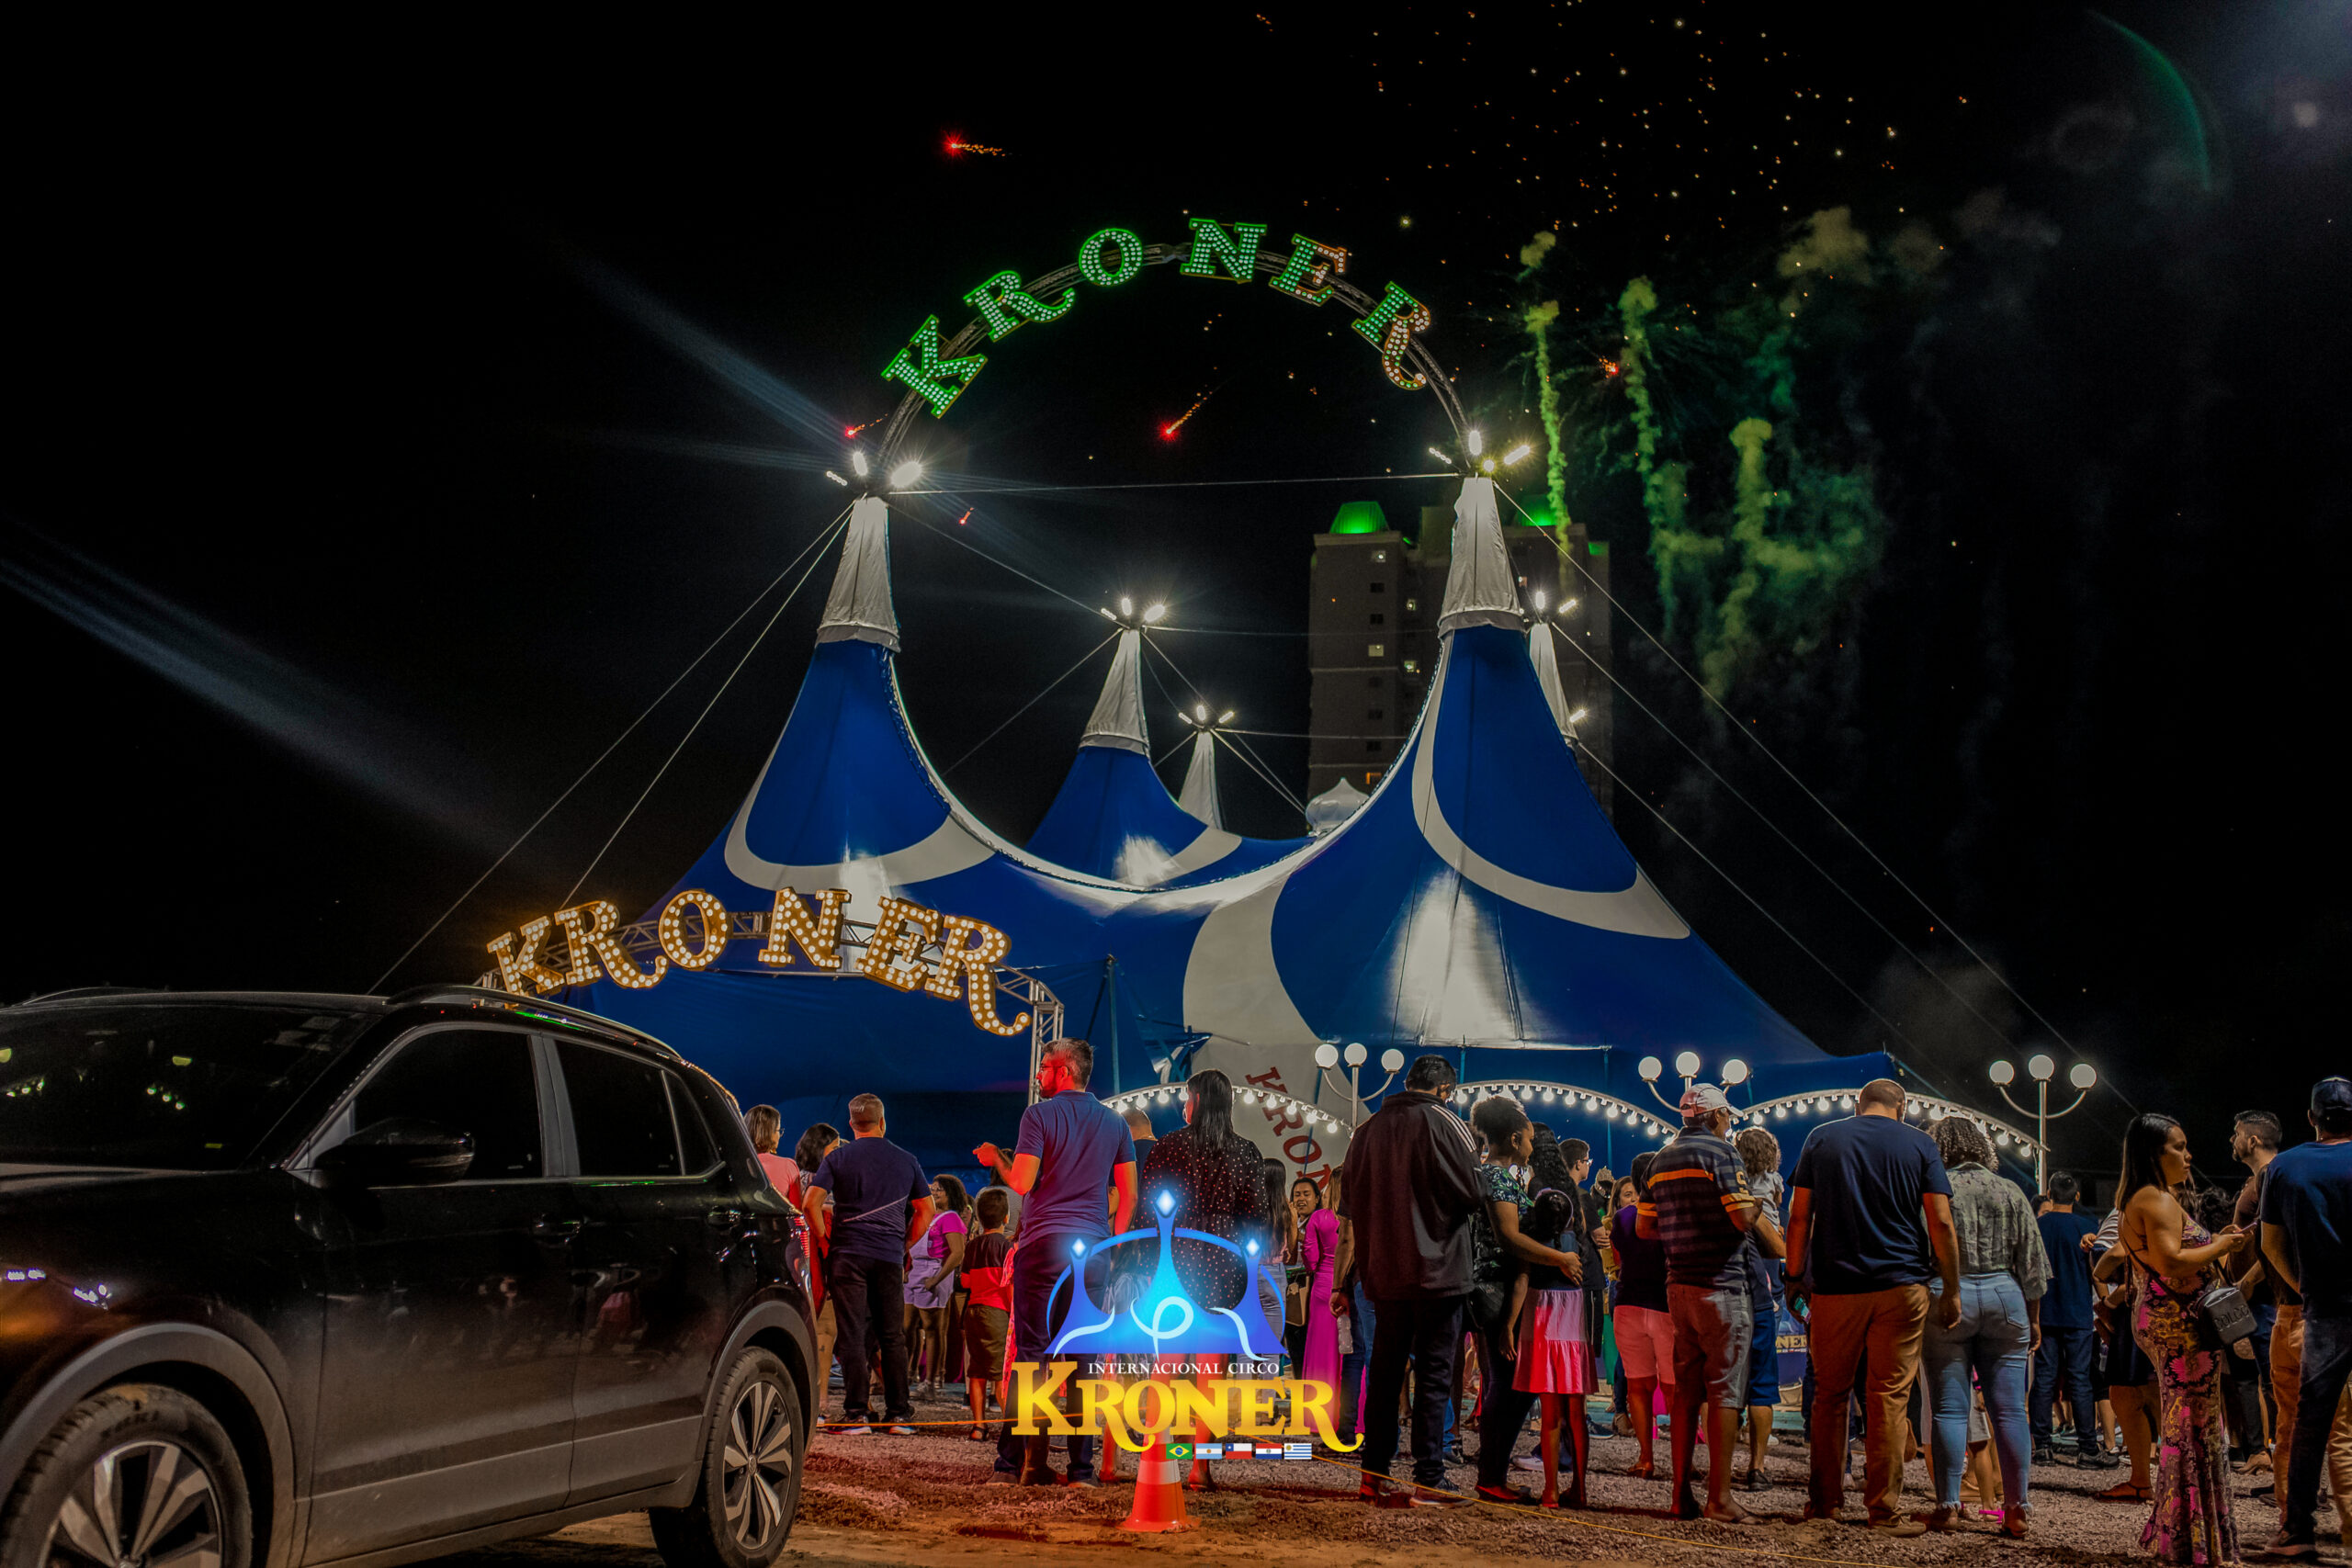 Circo internacional inicia temporada em Boa Vista no estacionamento de shopping no Cauamé